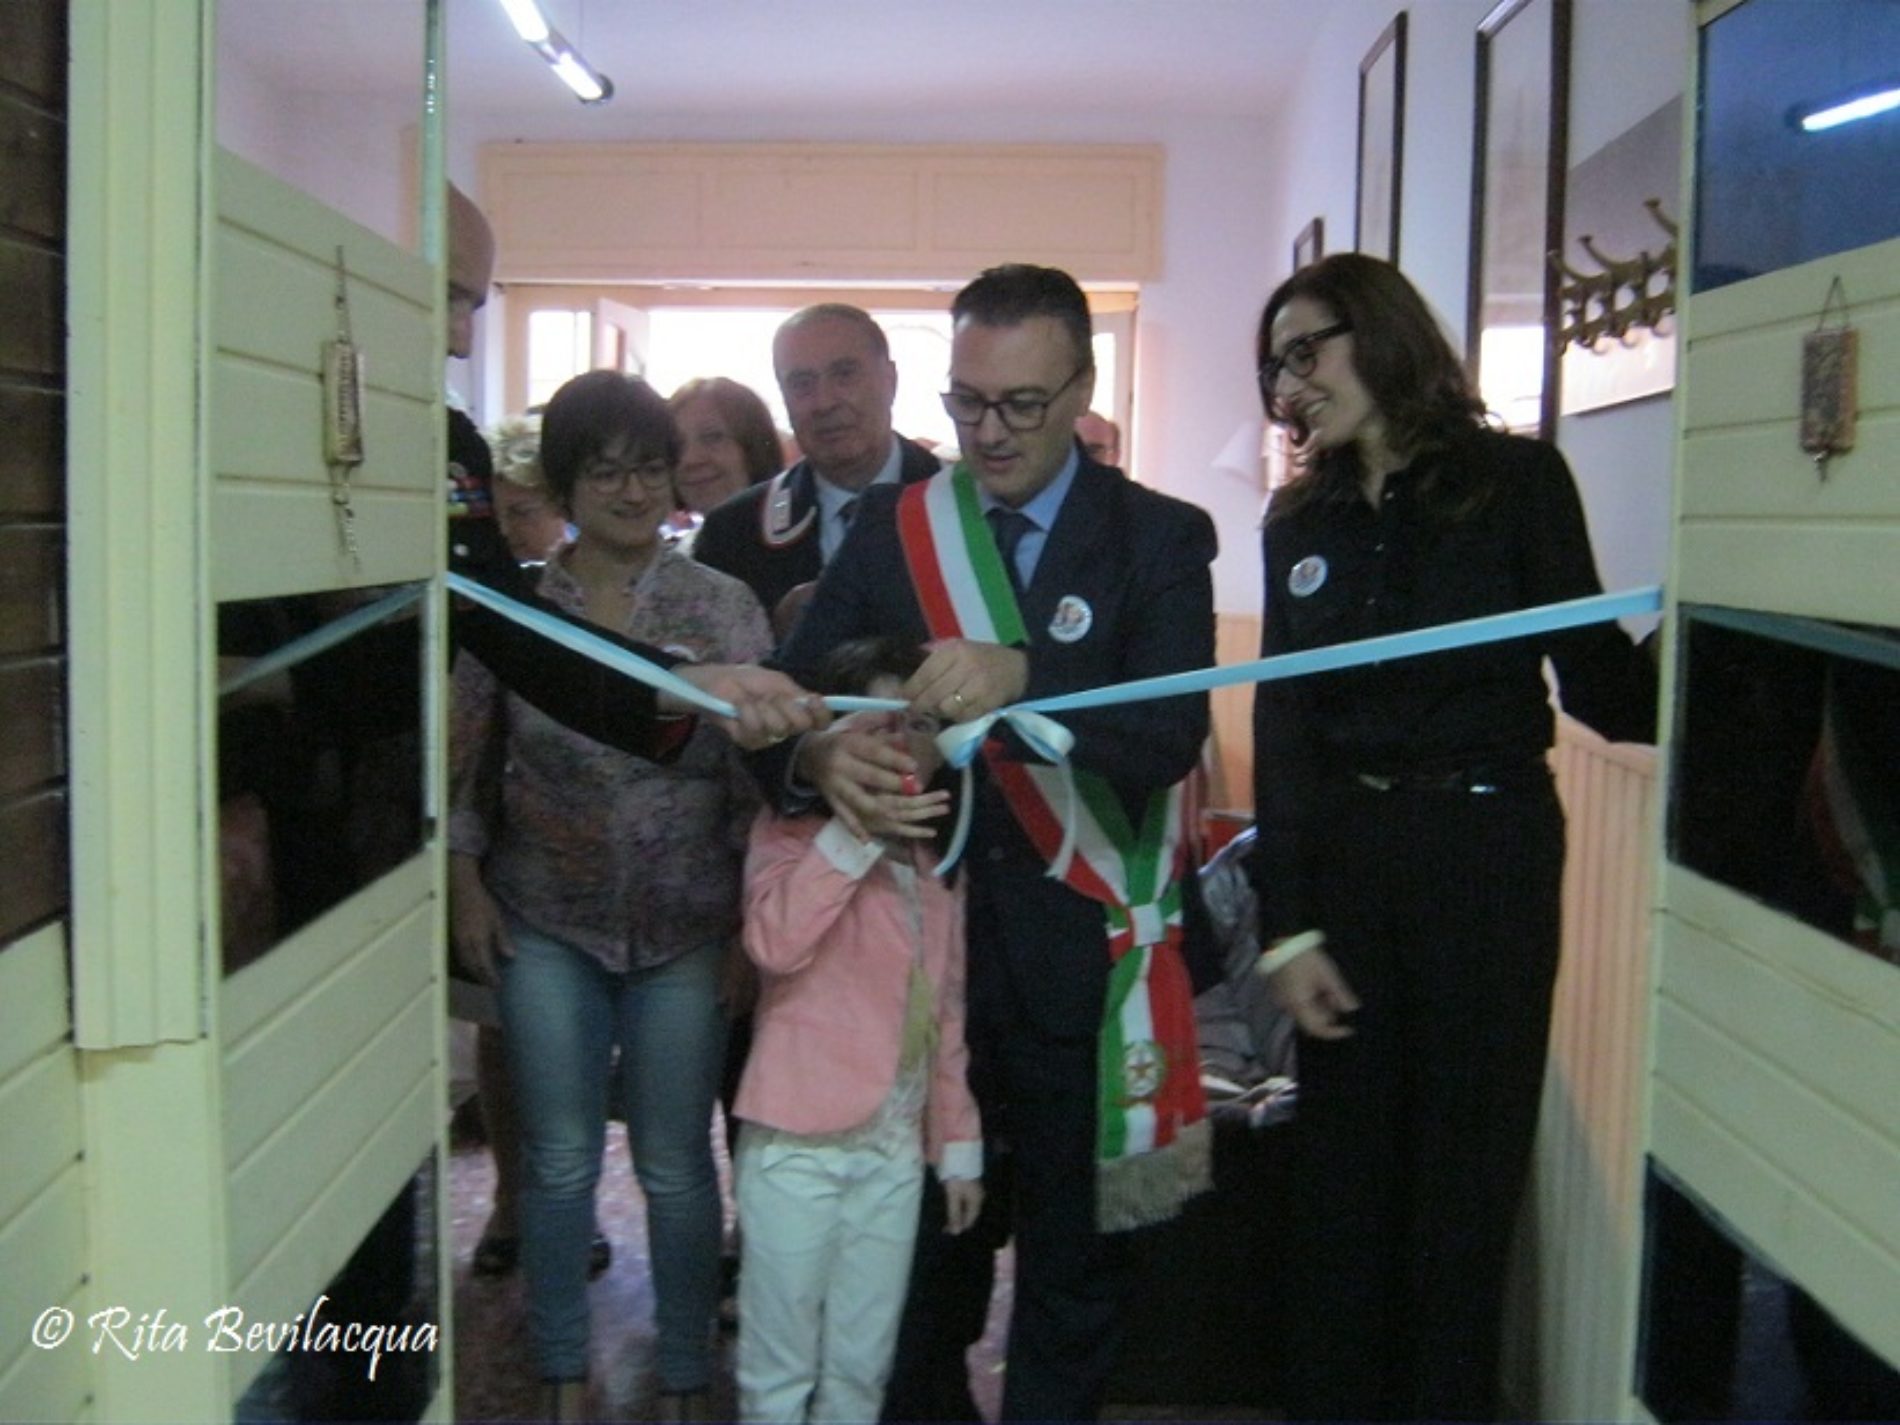 Inaugurata la mostra fotografica “Bambini nella Guerra”, nella sede dell’Ass. Naz. Carabinieri di Barrafranca